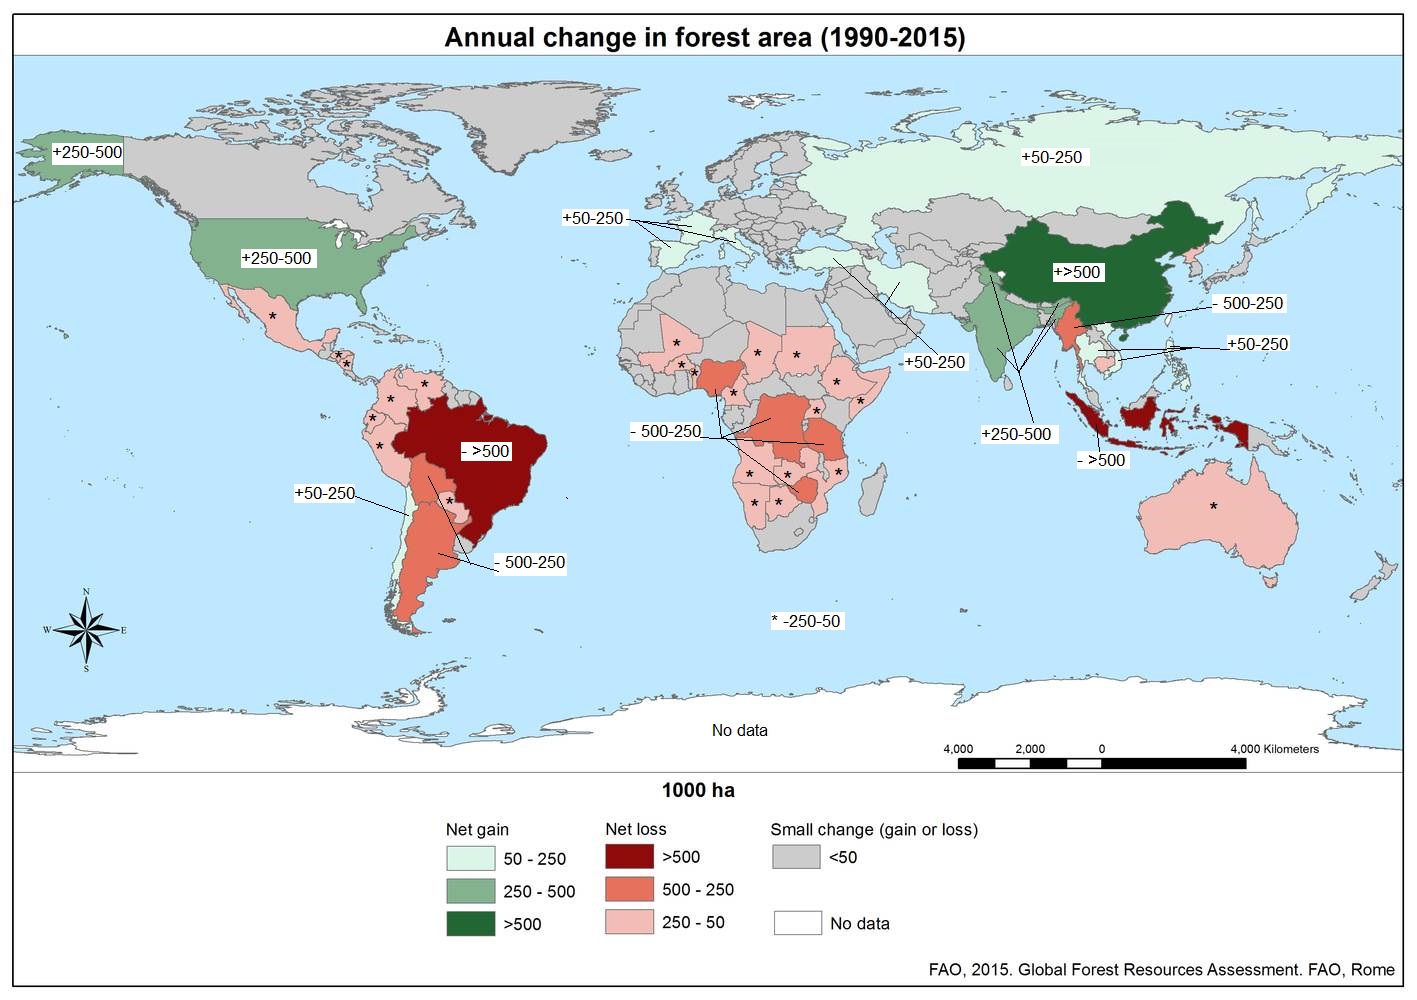 Mapa del mundo que indica cambio en la superficie forestal. Las regiones templadas están ganando área forestal, pero las regiones tropicales están perdiendo área forestal.